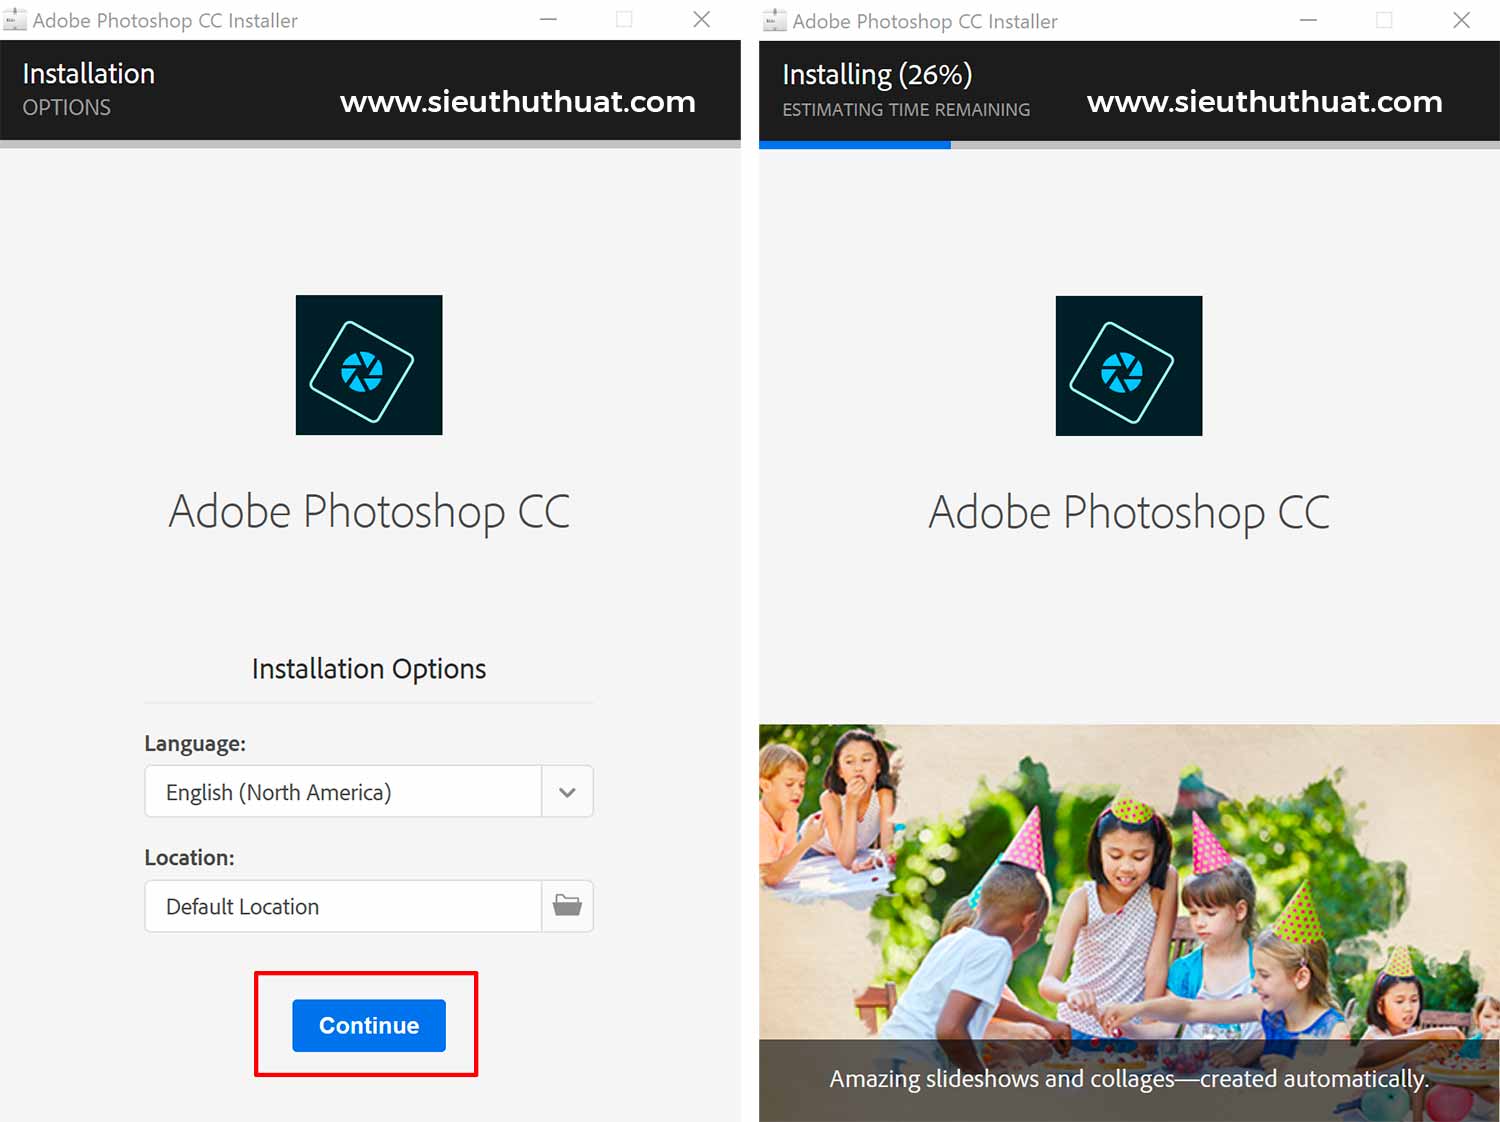 Hướng dẫn cài đặt Adobe Photoshop CC 2019